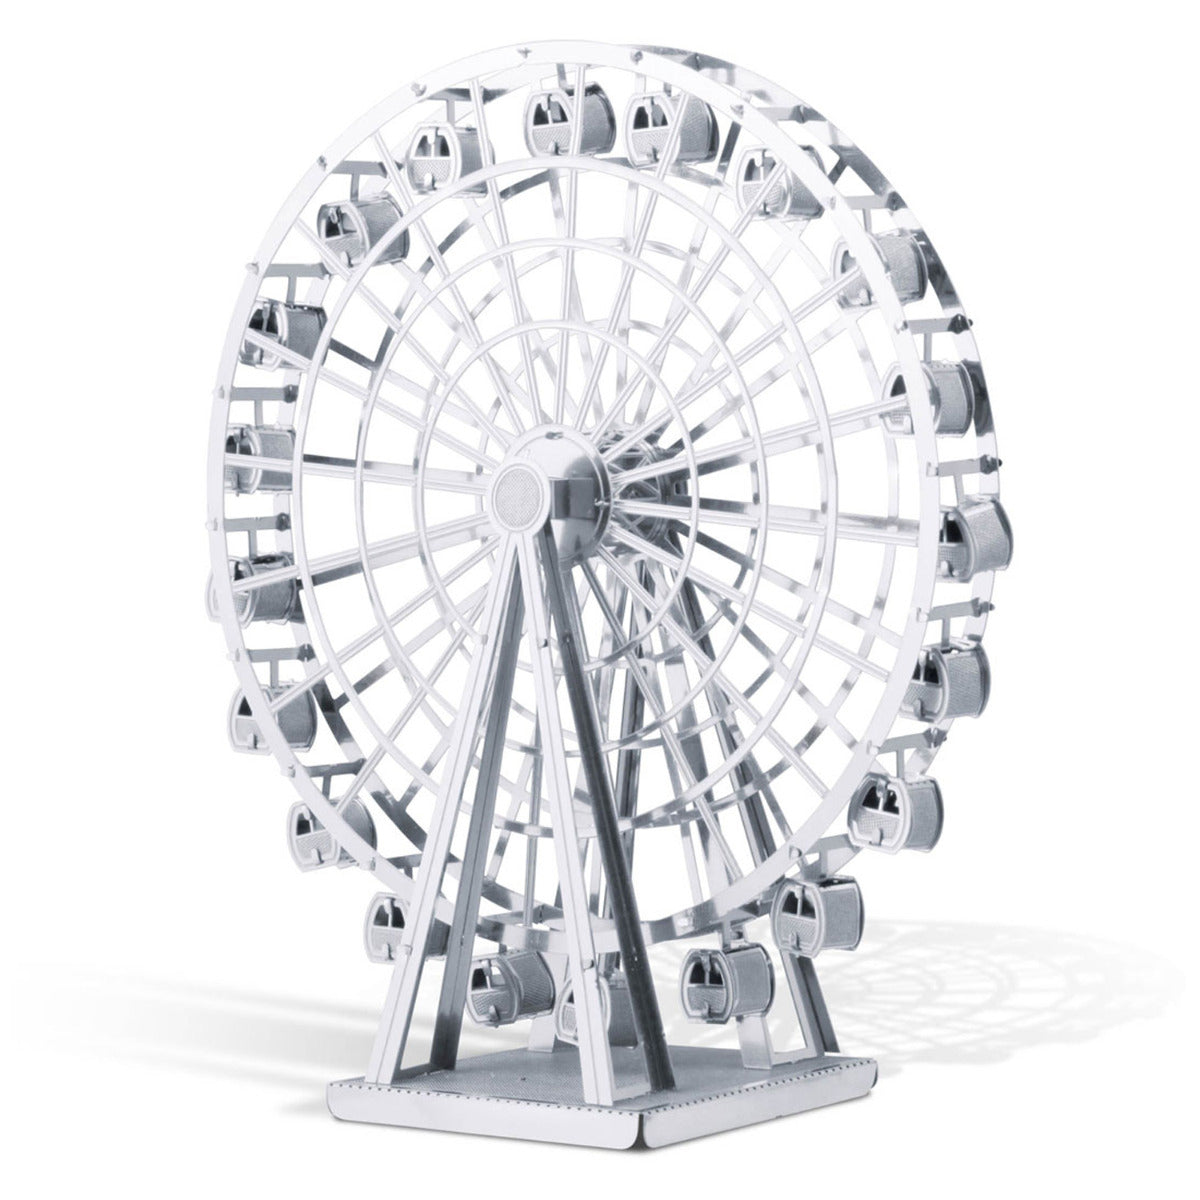 Metal Earth Metallbausätze MMS044 Ferris Wheel Riesenrad Metall Modell